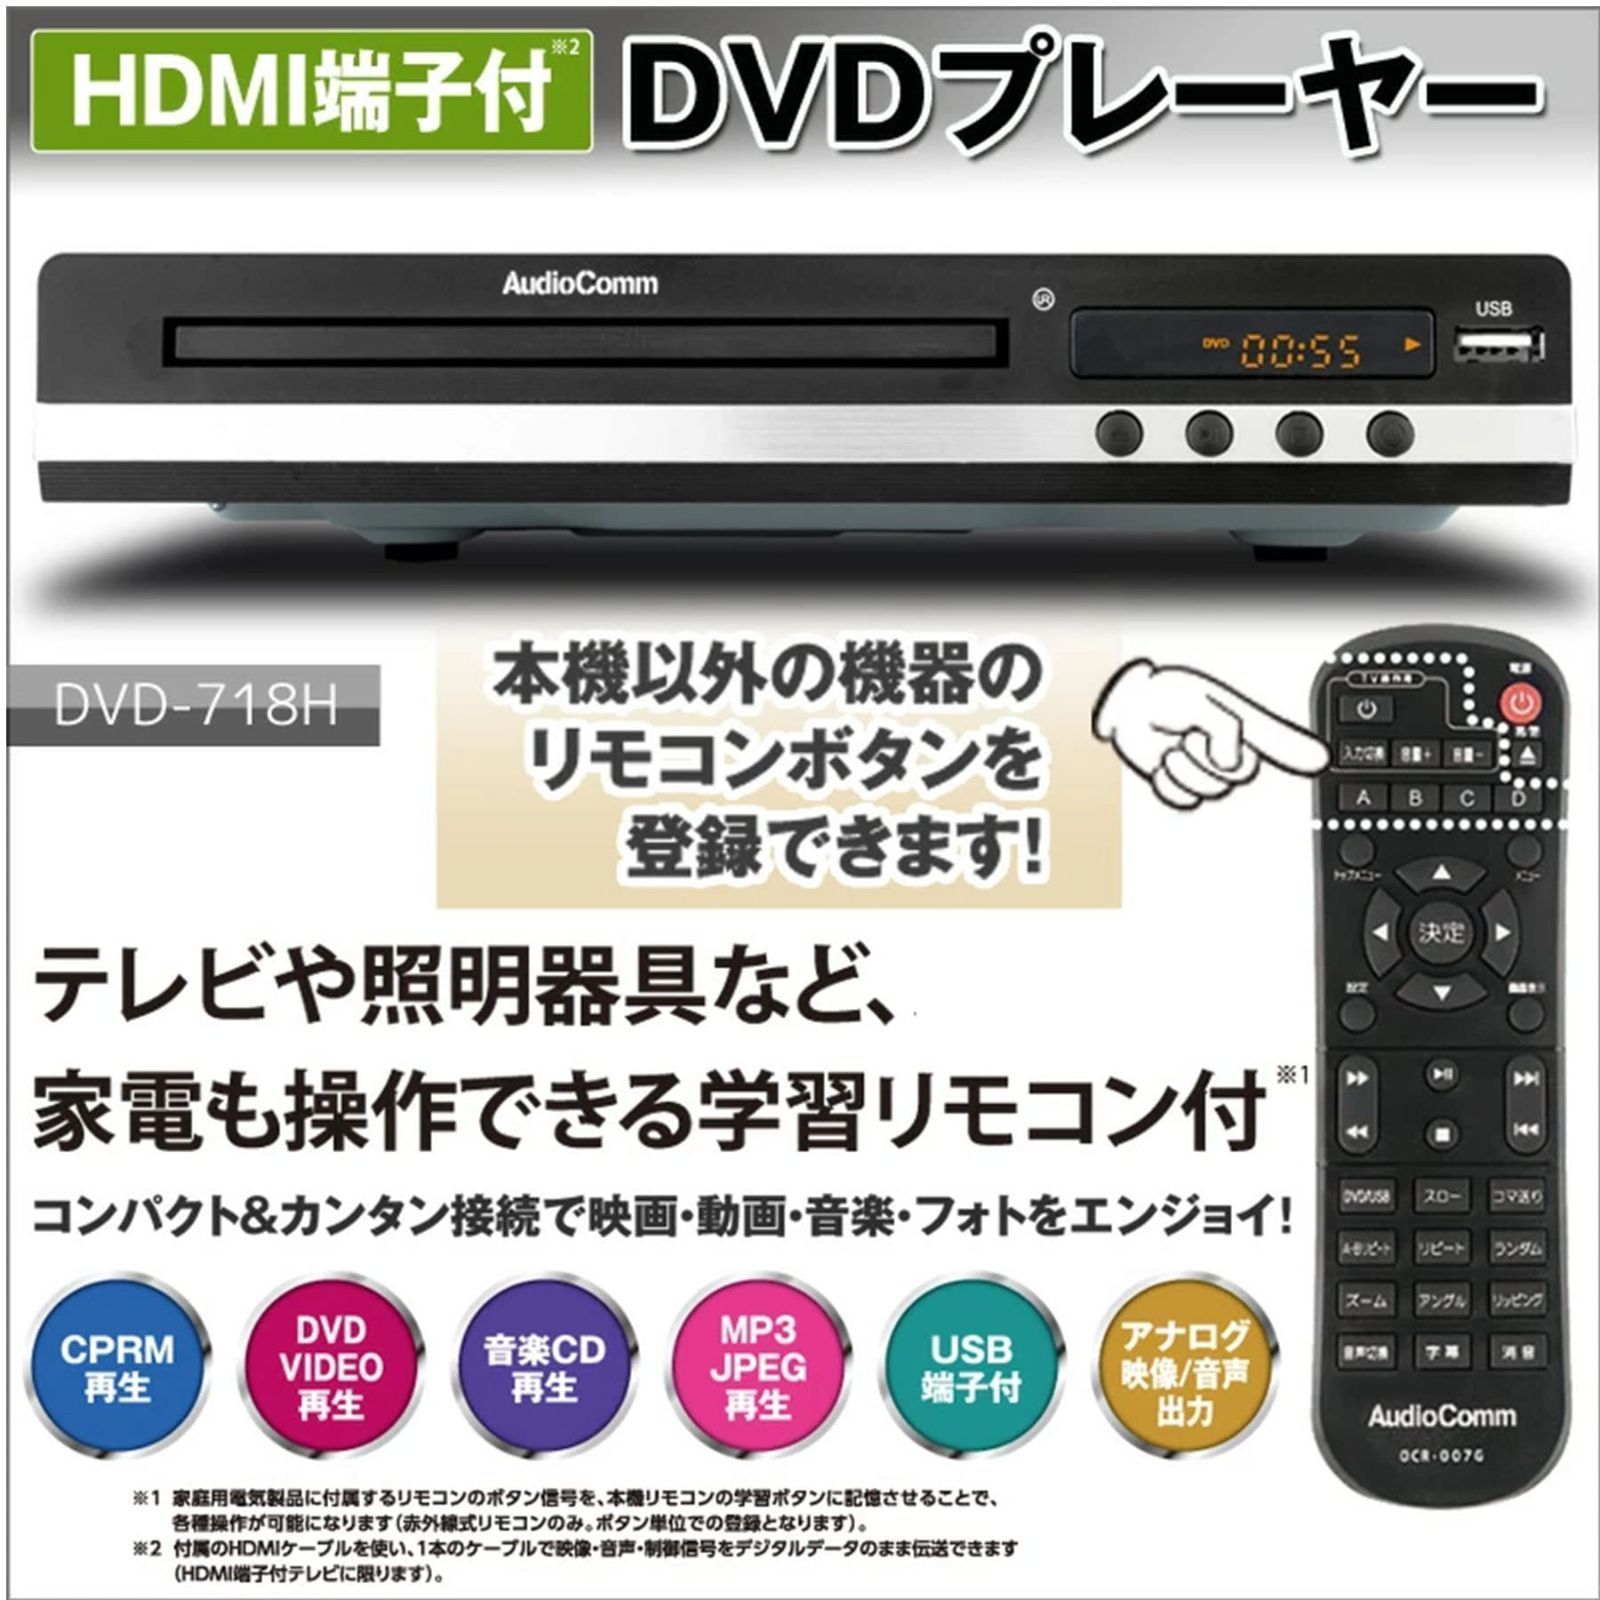 新品 未使用 HDMI端子付 DVDプレーヤー | www.eesppsantarosacusco.edu.pe